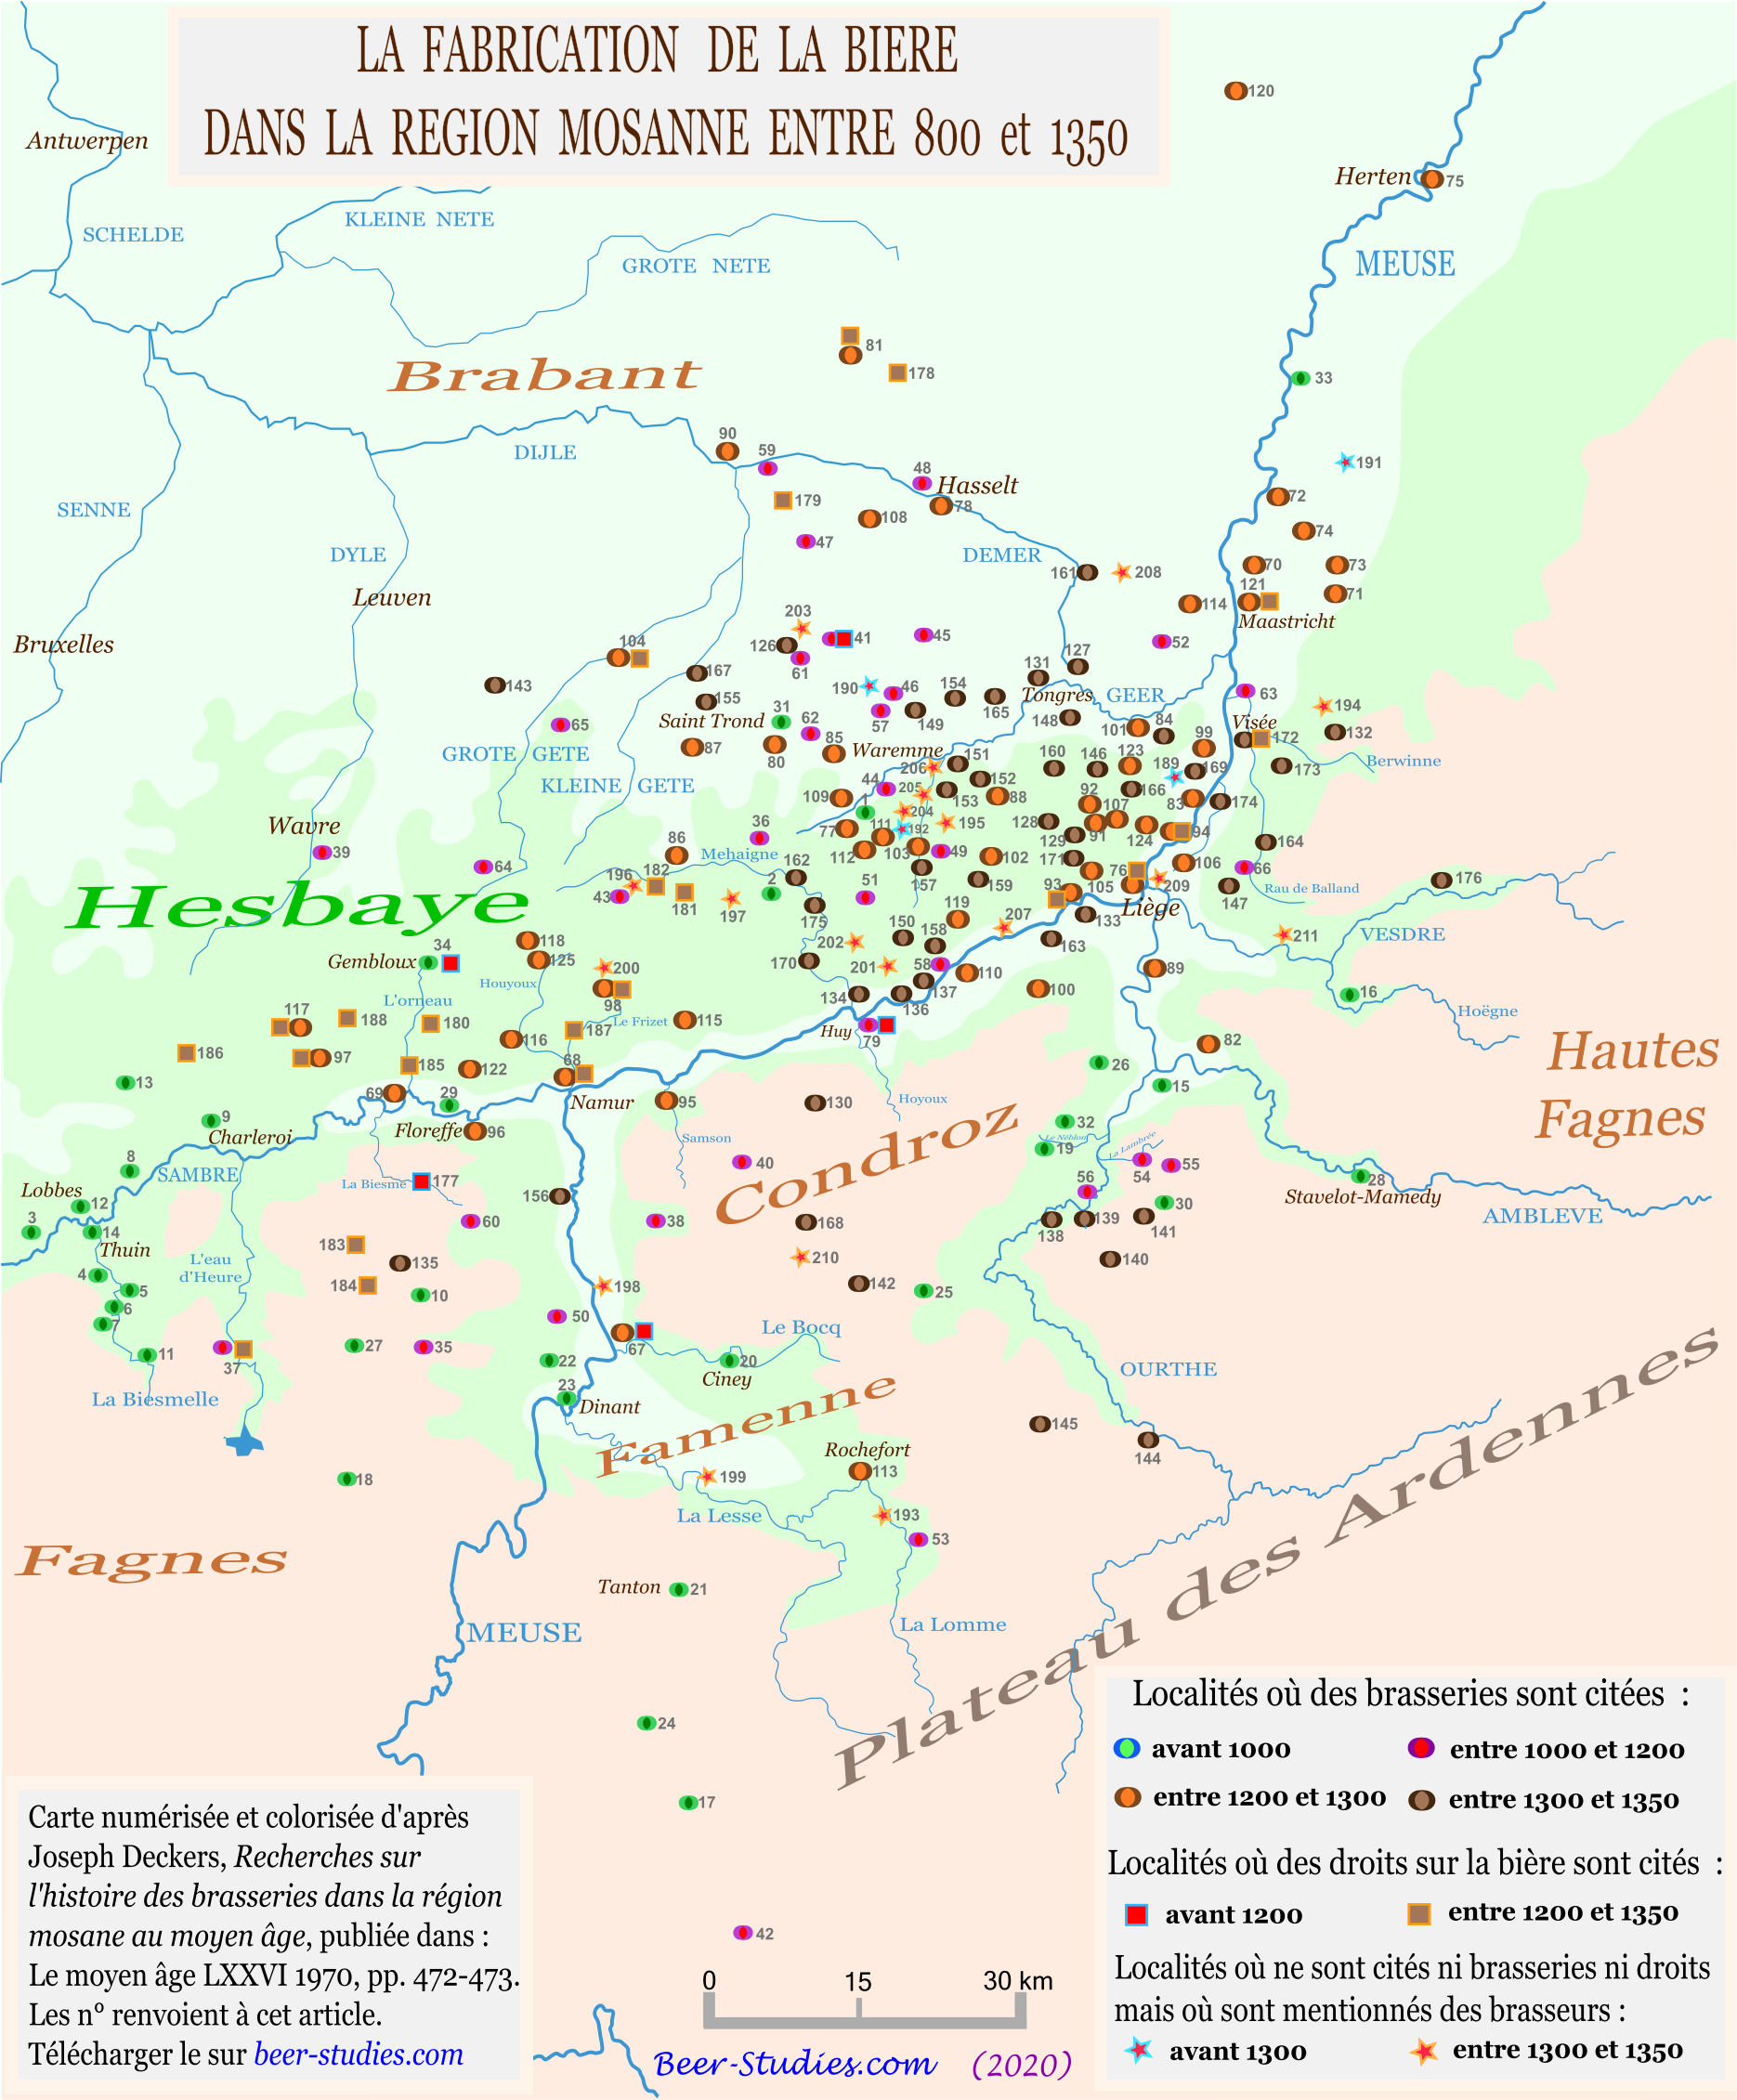 Deckers. Carte des brasseries du bassin moyen de la Meuse enre 800 et 1350